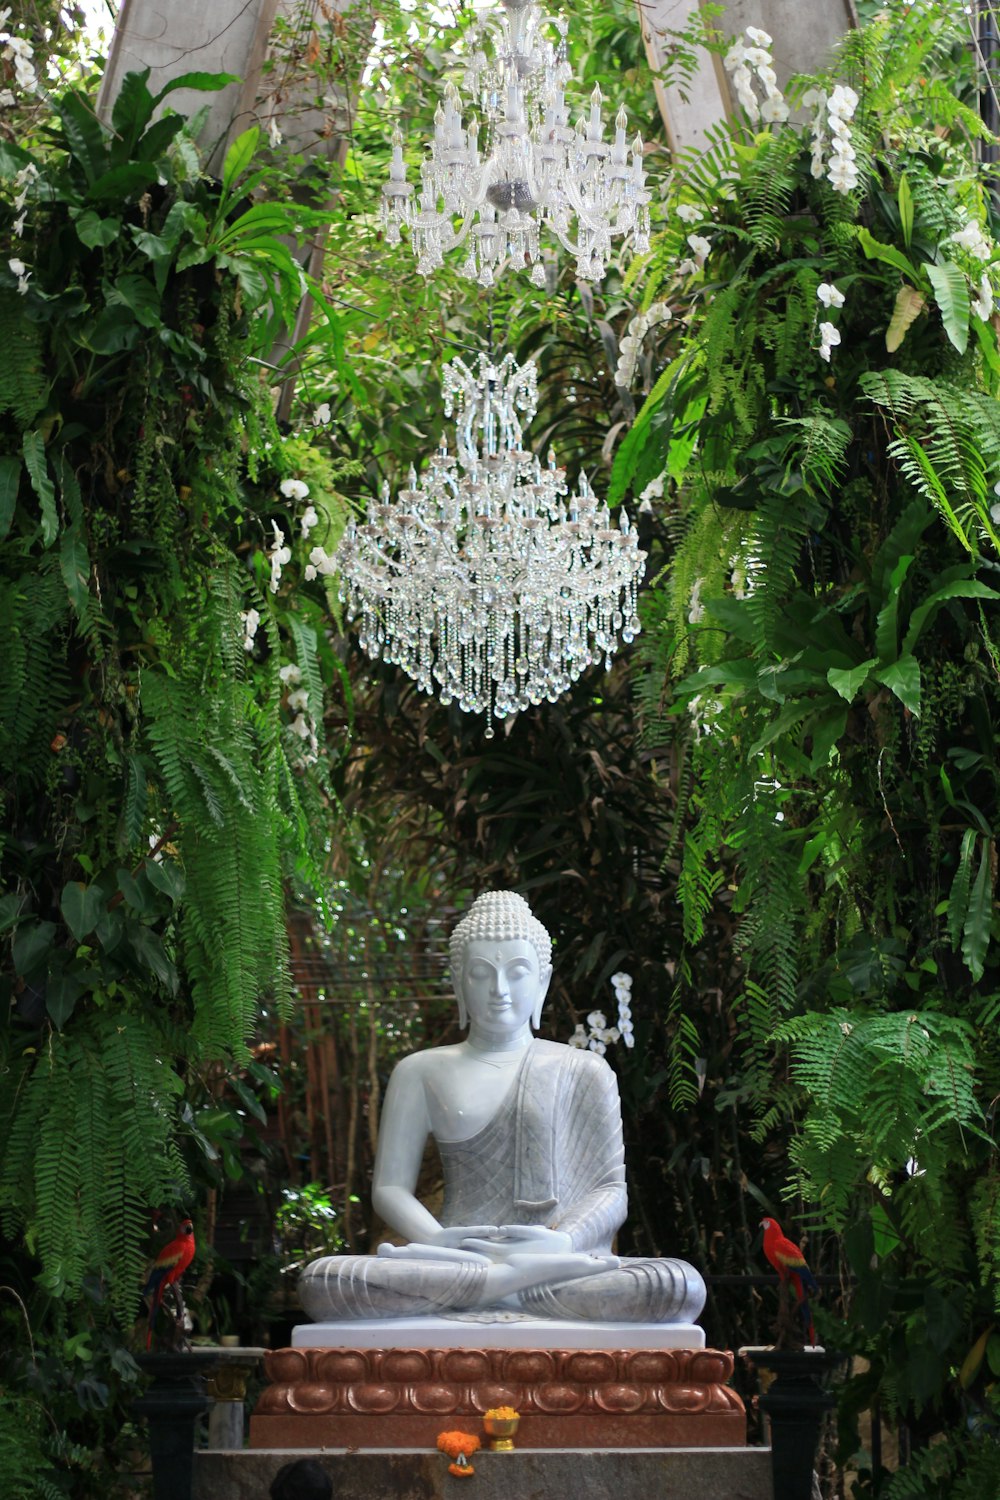 Une statue de Bouddha assise dans un jardin entouré de verdure